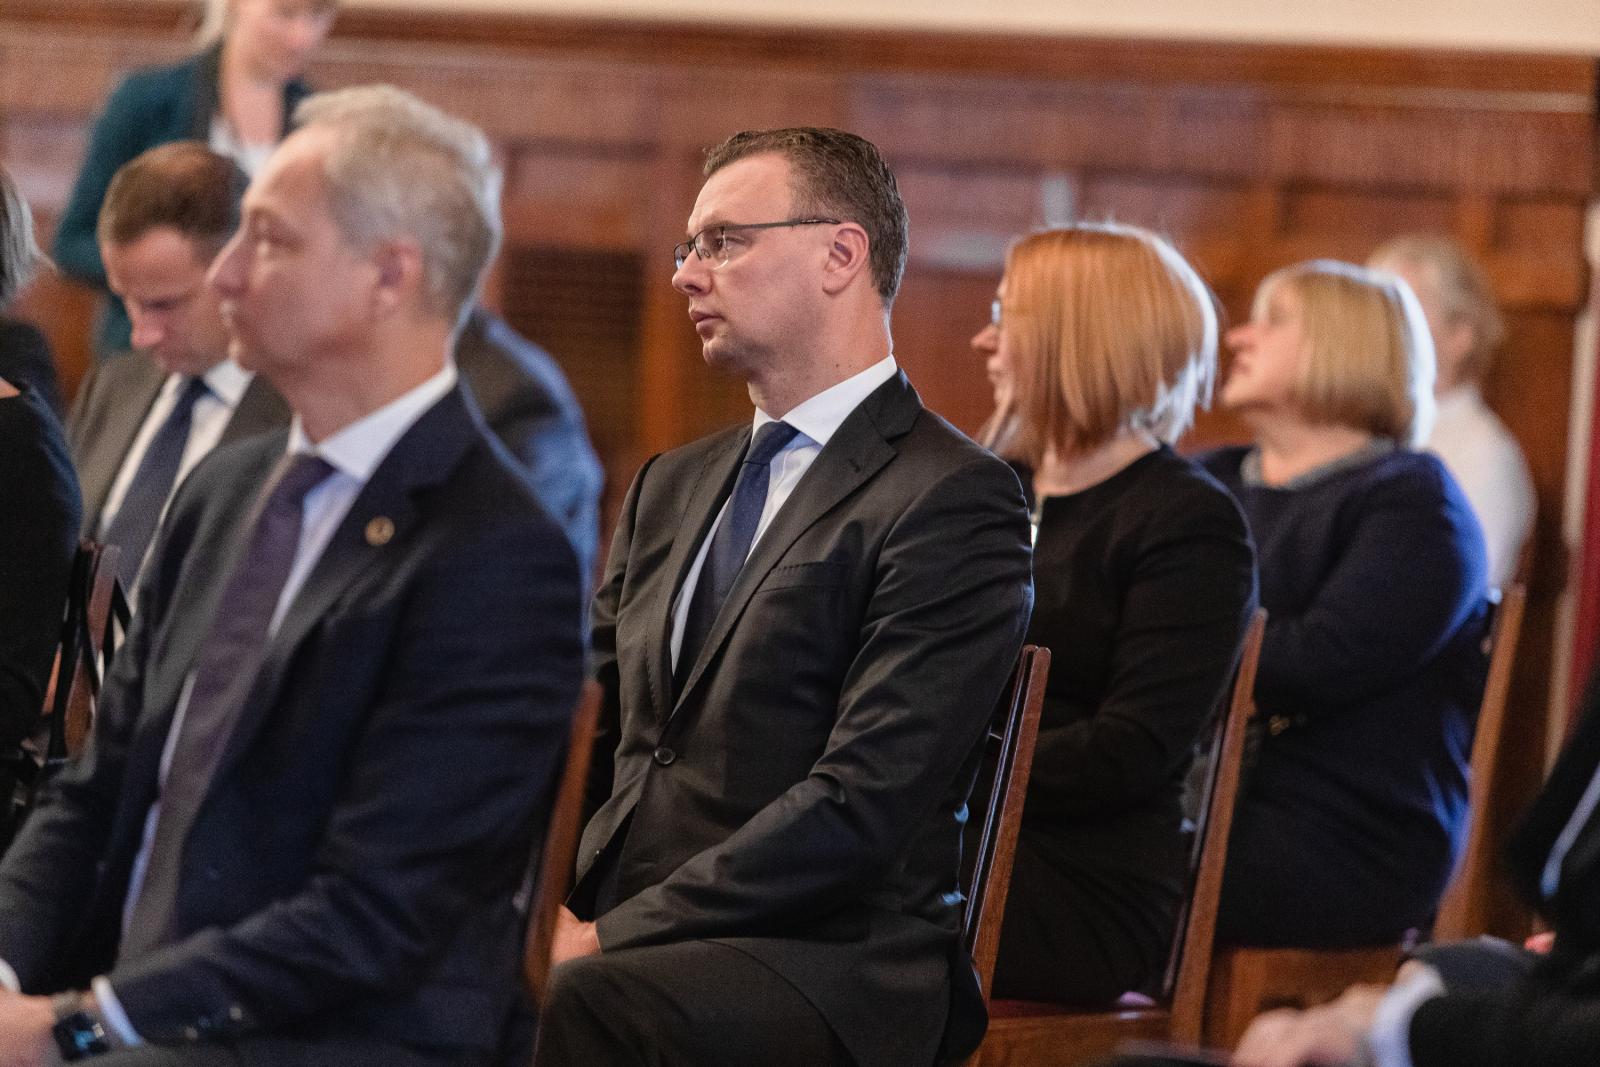 Pasākums  Rīgas pilī par godu ievērojamā Latvijas valsts un sabiedriskā darbinieka Miķeļa Valtera pārapbedīšanai Latvijā